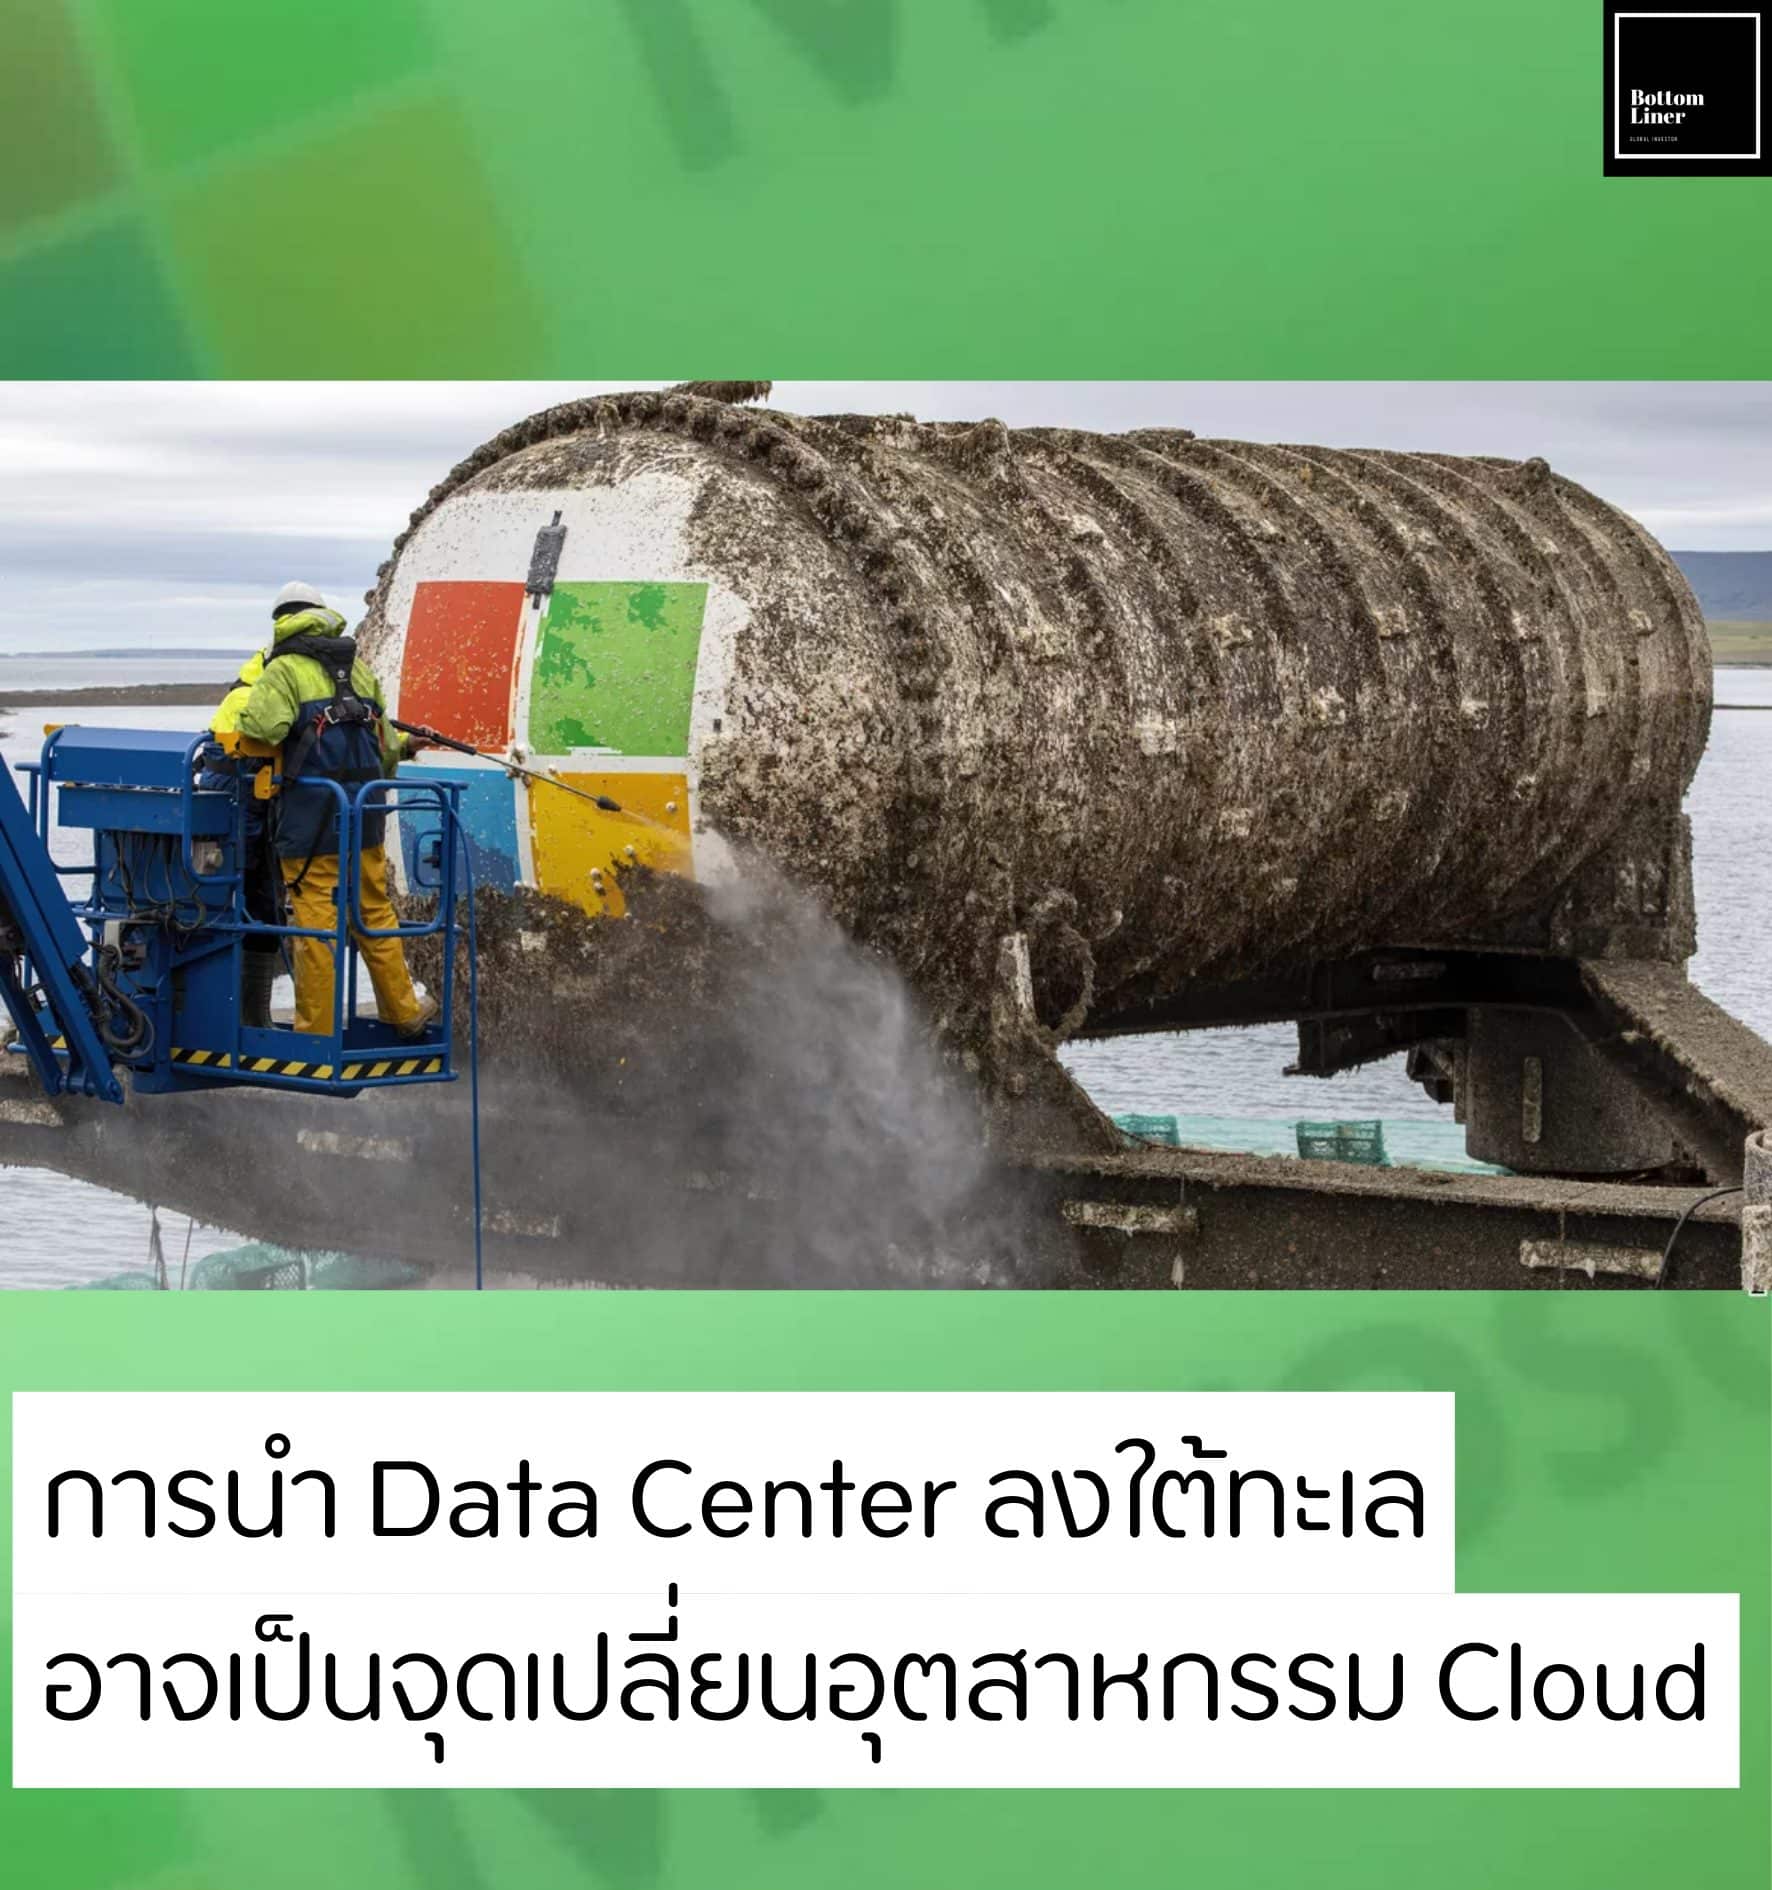 การนำ Data Center ลงใต้ทะเล อาจเป็นจุดเปลี่ยนอุตสาหกรรม Cloud